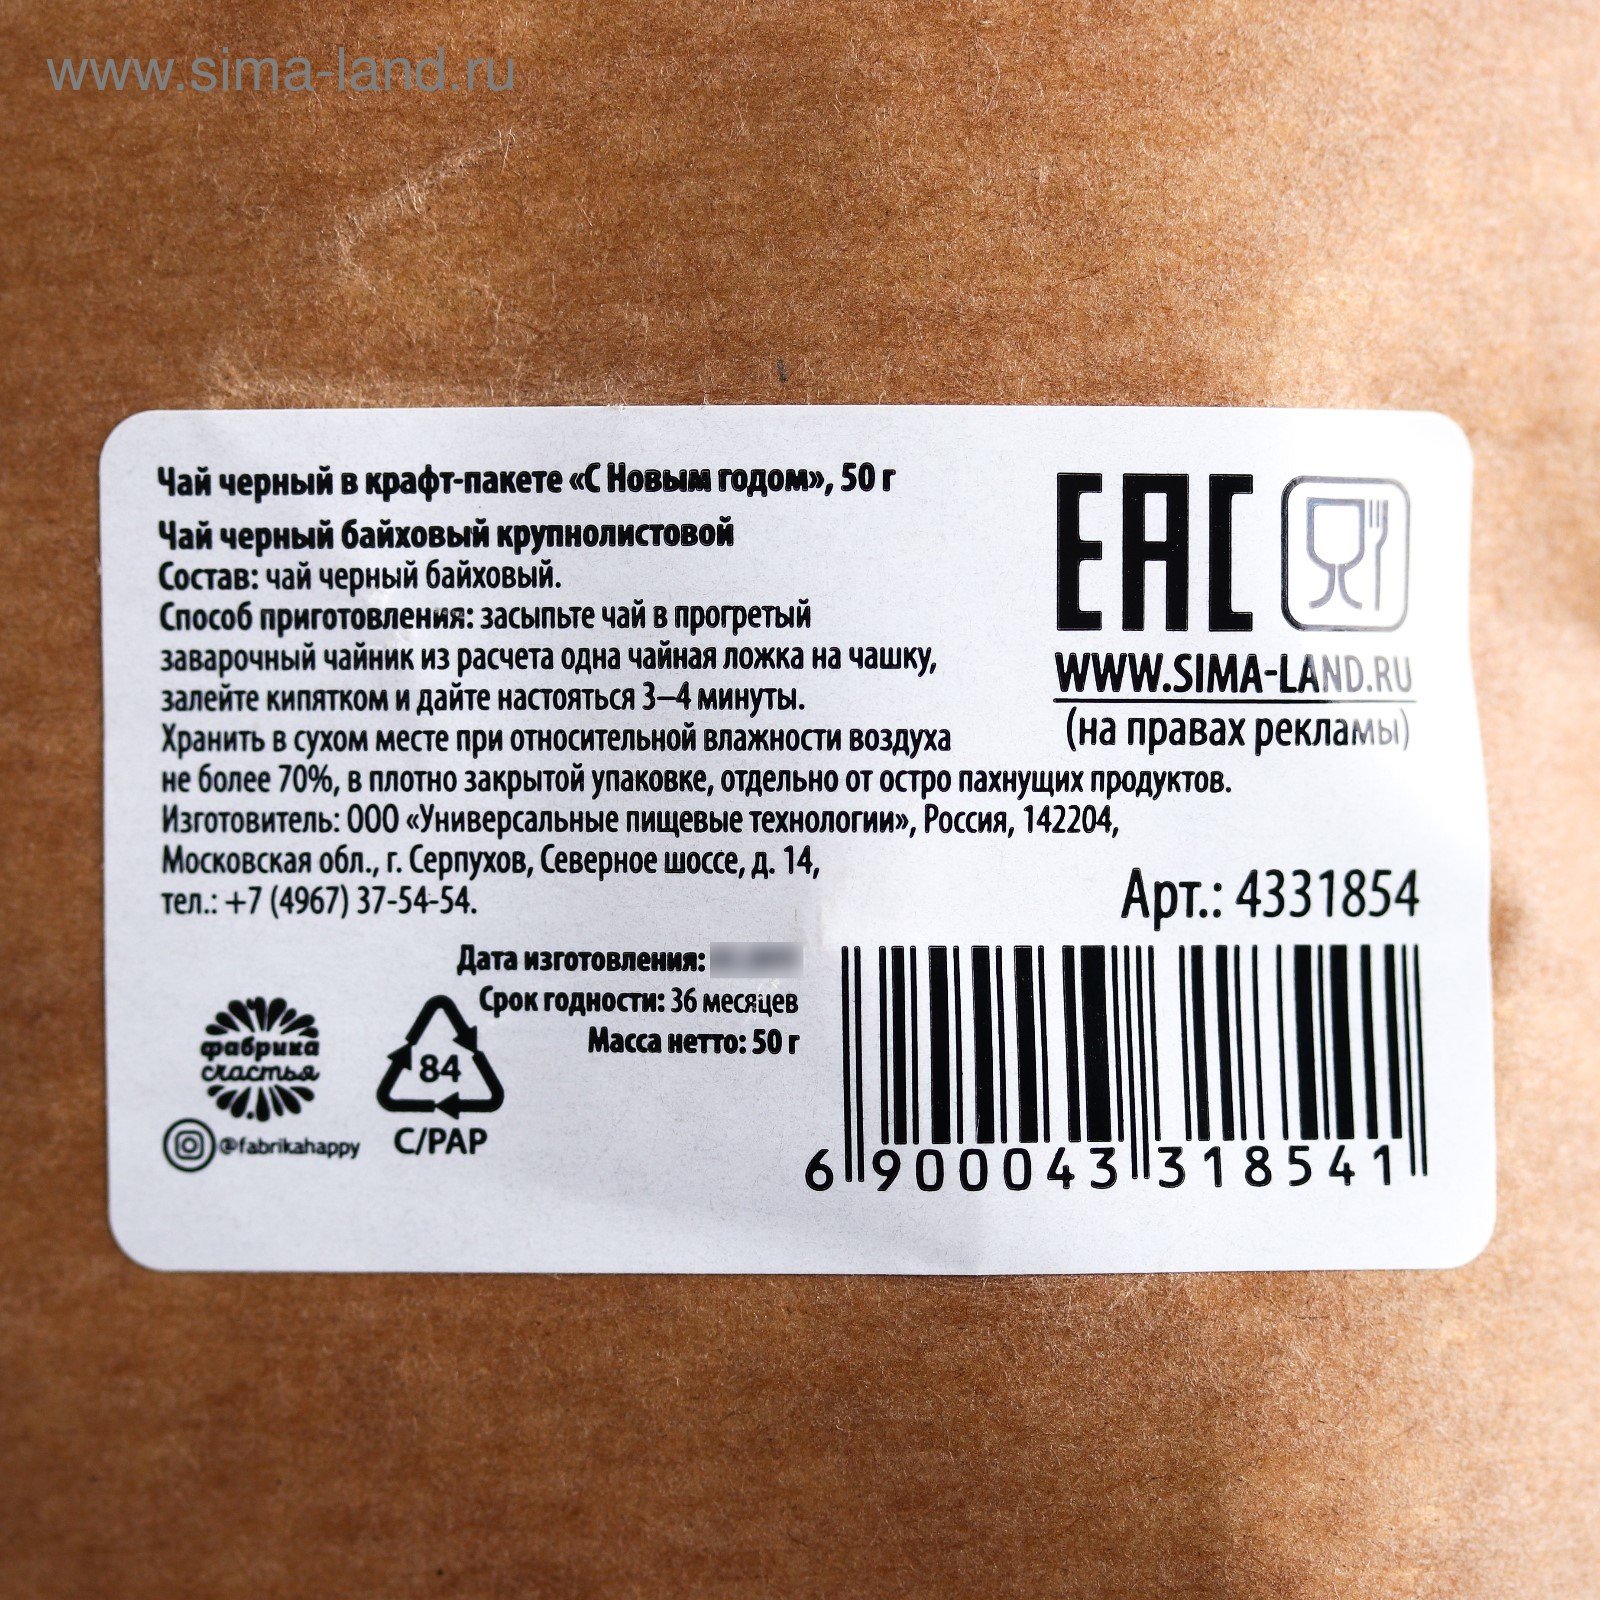 Масса нетто что это. EAC на упаковке. Символ EAC на упаковке. Значки на упаковке EAC. Значок ЕАС на упаковке.